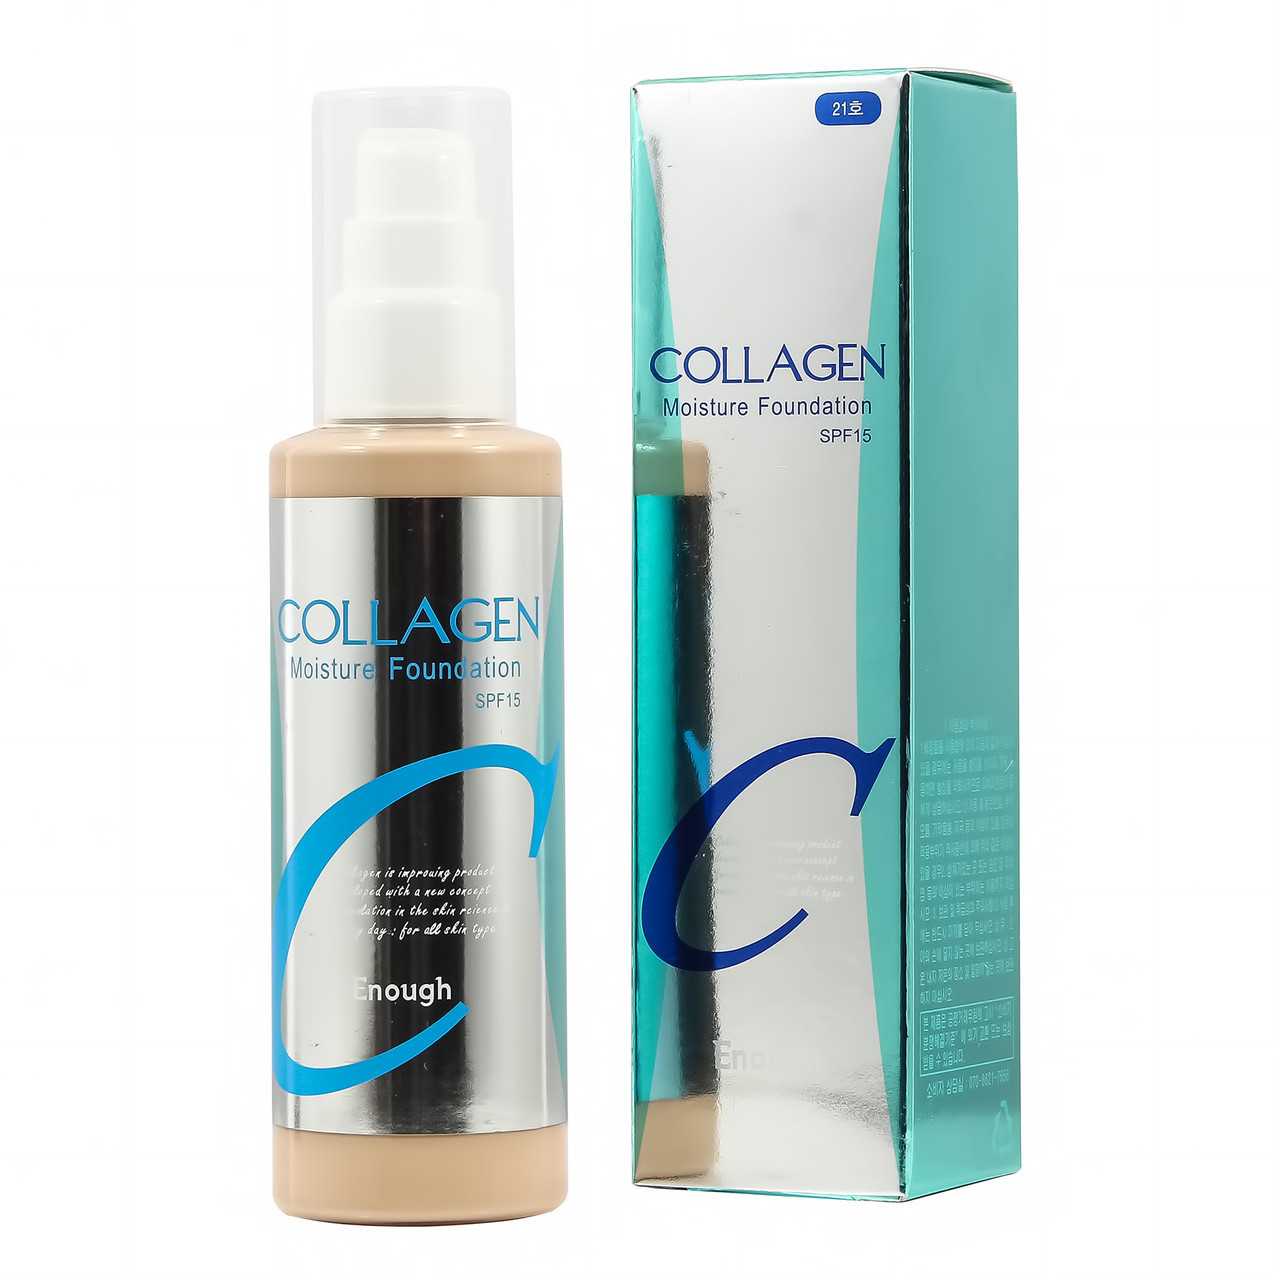 Enough collagen moisture foundation spf-15 и какие еще 4 крема для лица этого бренда пользуются популярностью среди женщин